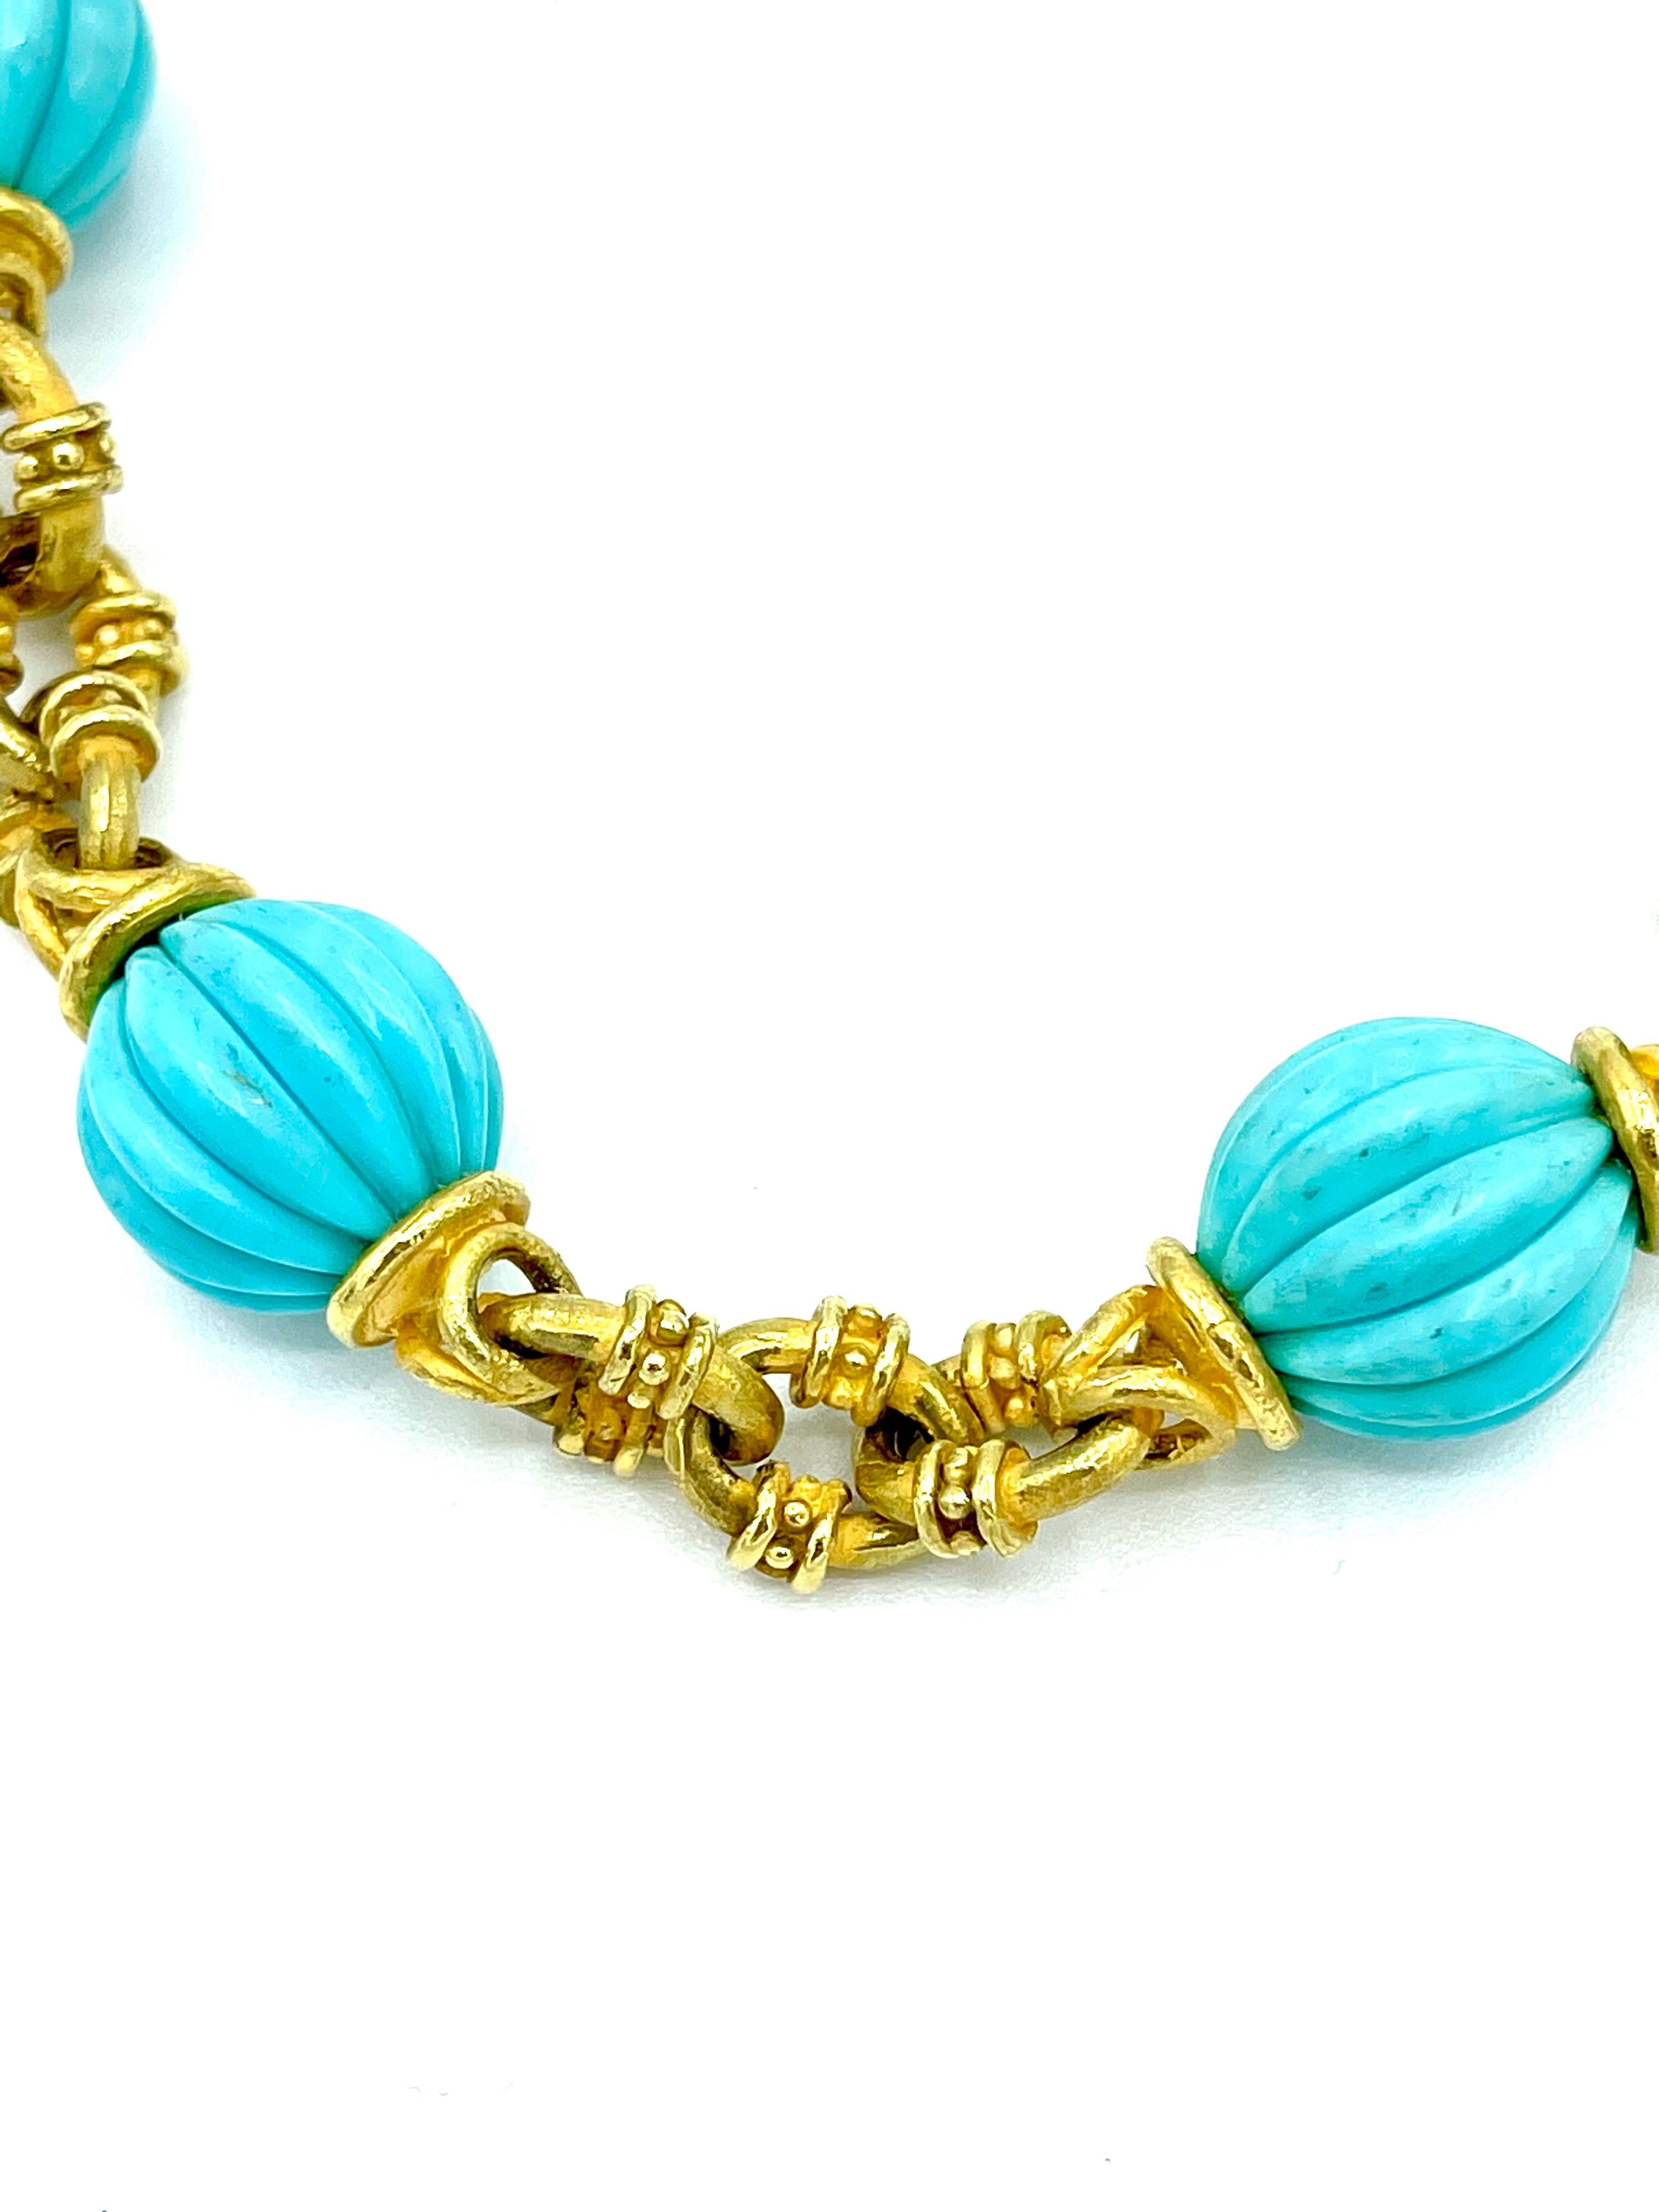 Die perfekte Halskette für die ganze Zeit!  Diese 25,00-Zoll-Halskette verfügt über 14,70 mm geschnitzt gerippt Türkis Perlen mit einem wunderschön handgefertigten matte Oberfläche 18K gelb Gott Link.  Es gibt 12 türkisfarbene Perlen mit drei